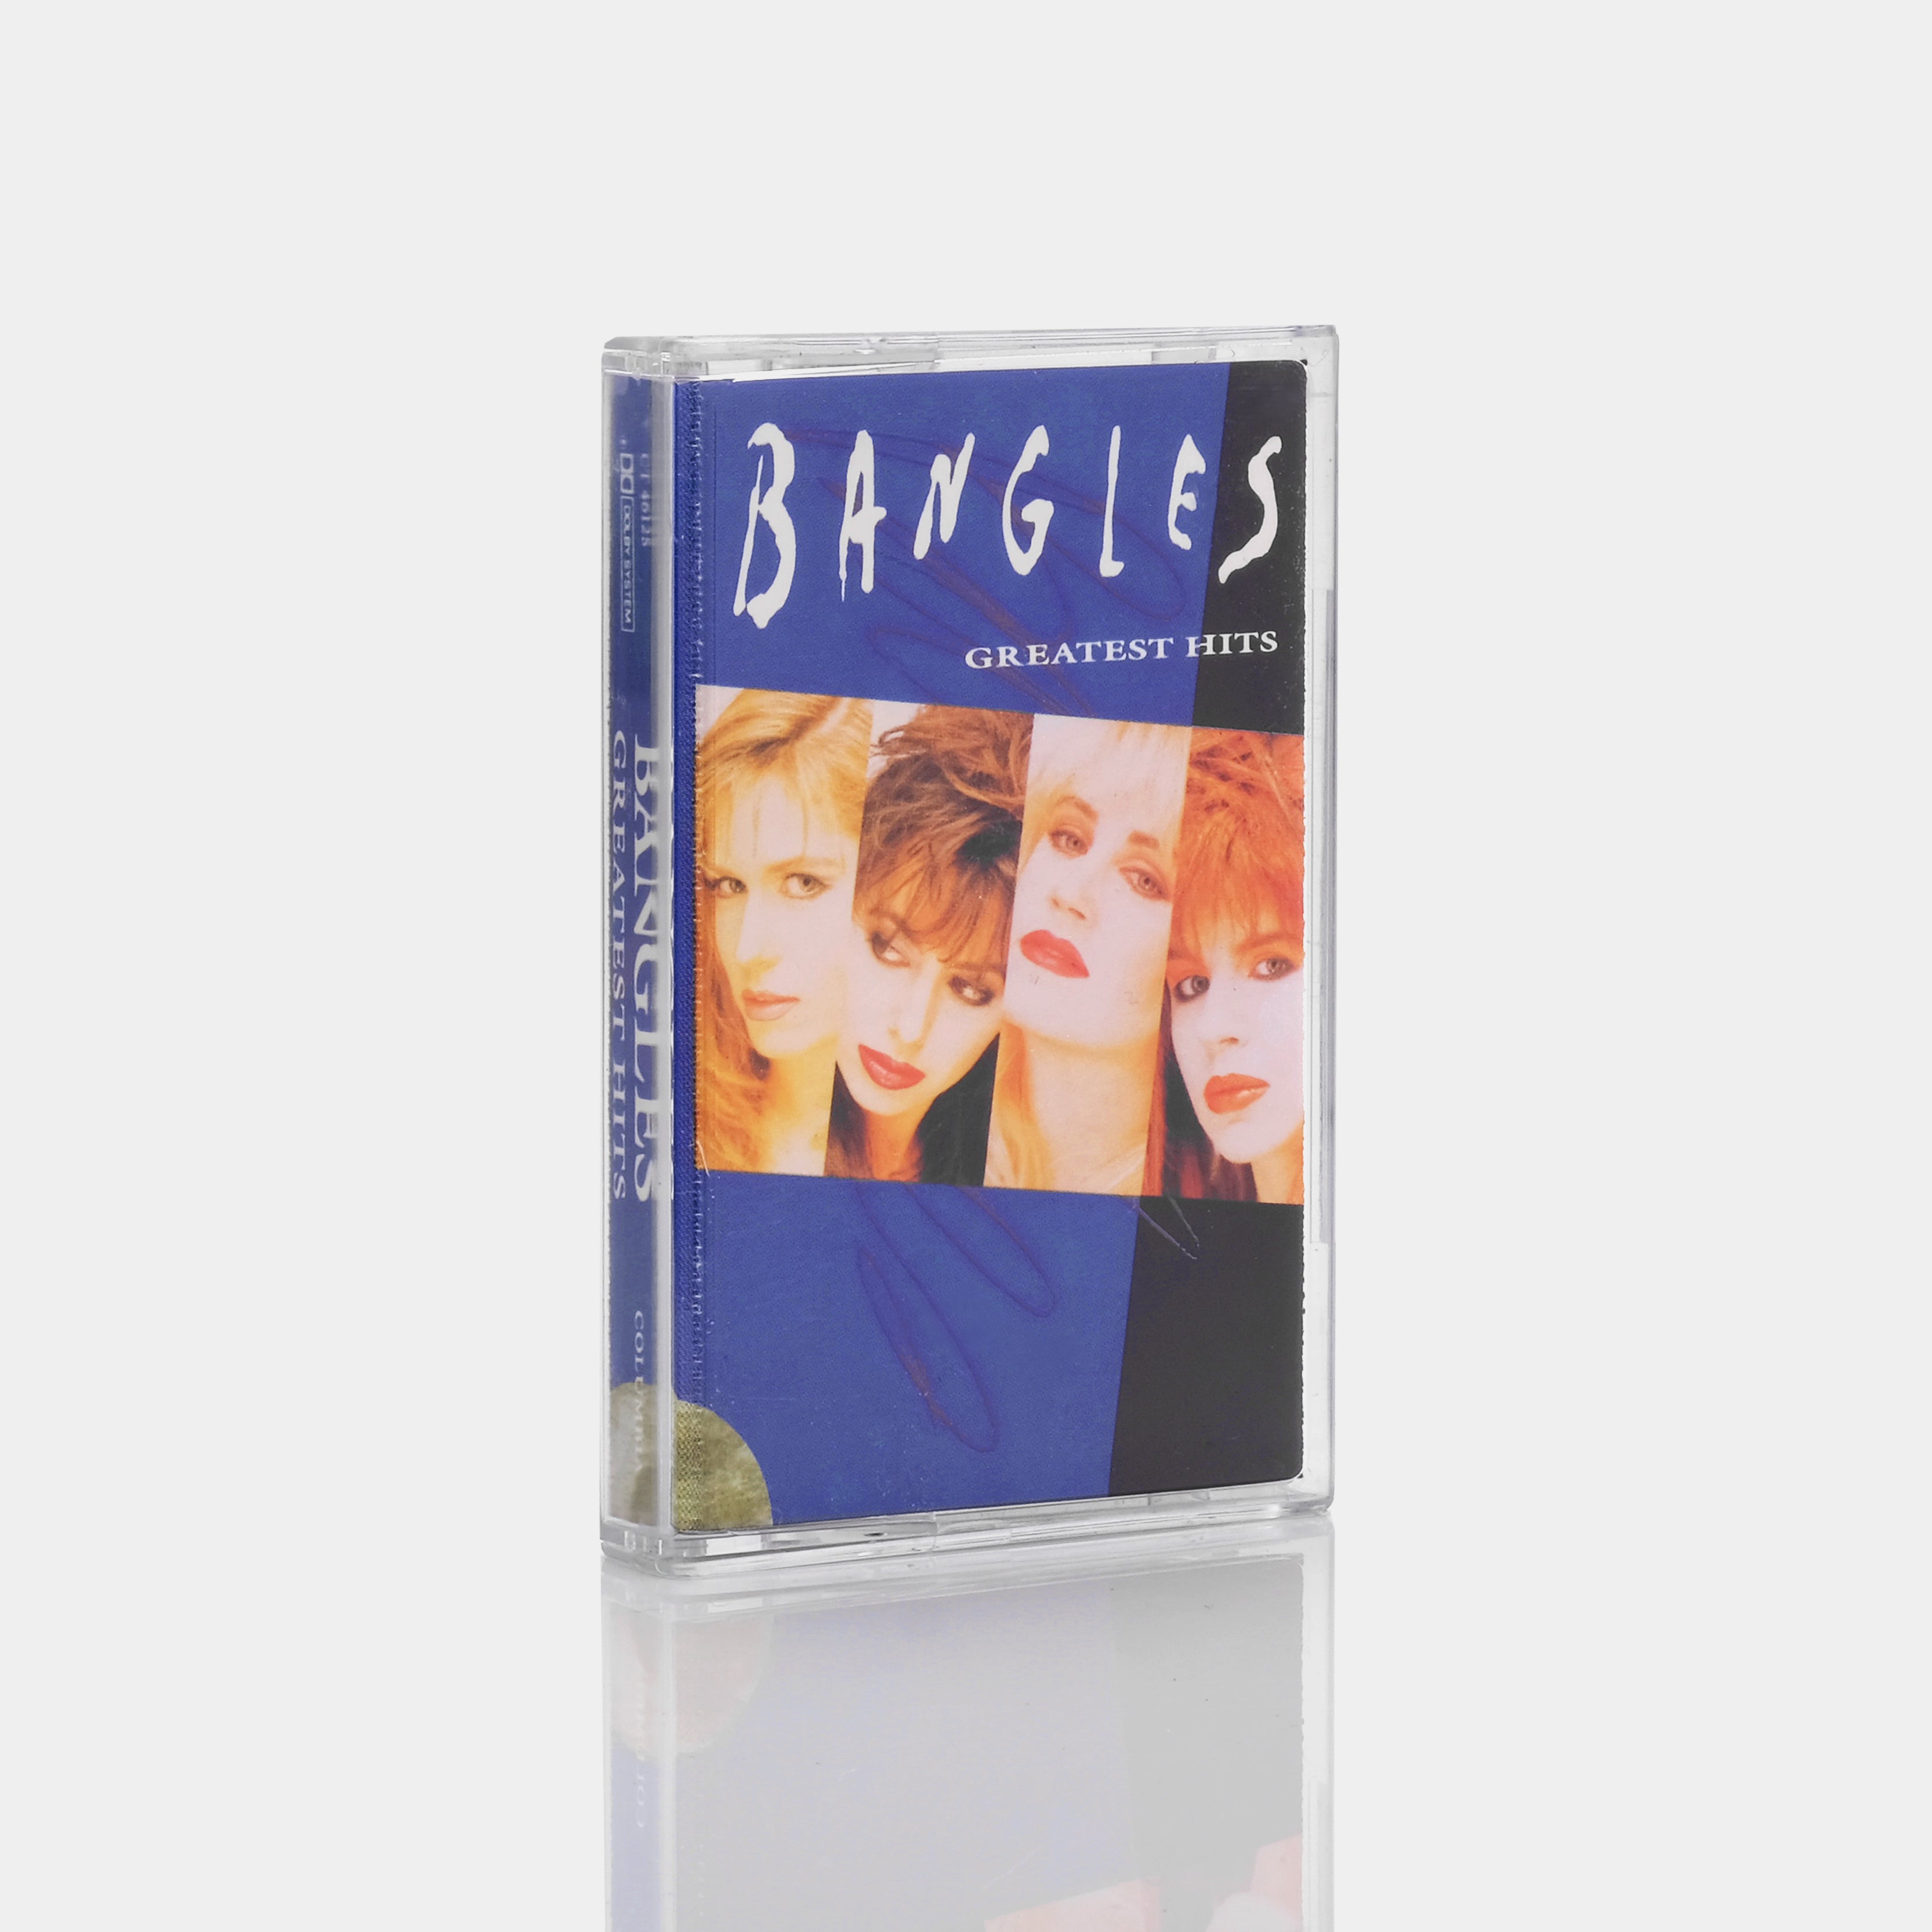 Bangles - Greatest Hits Cassette Tape